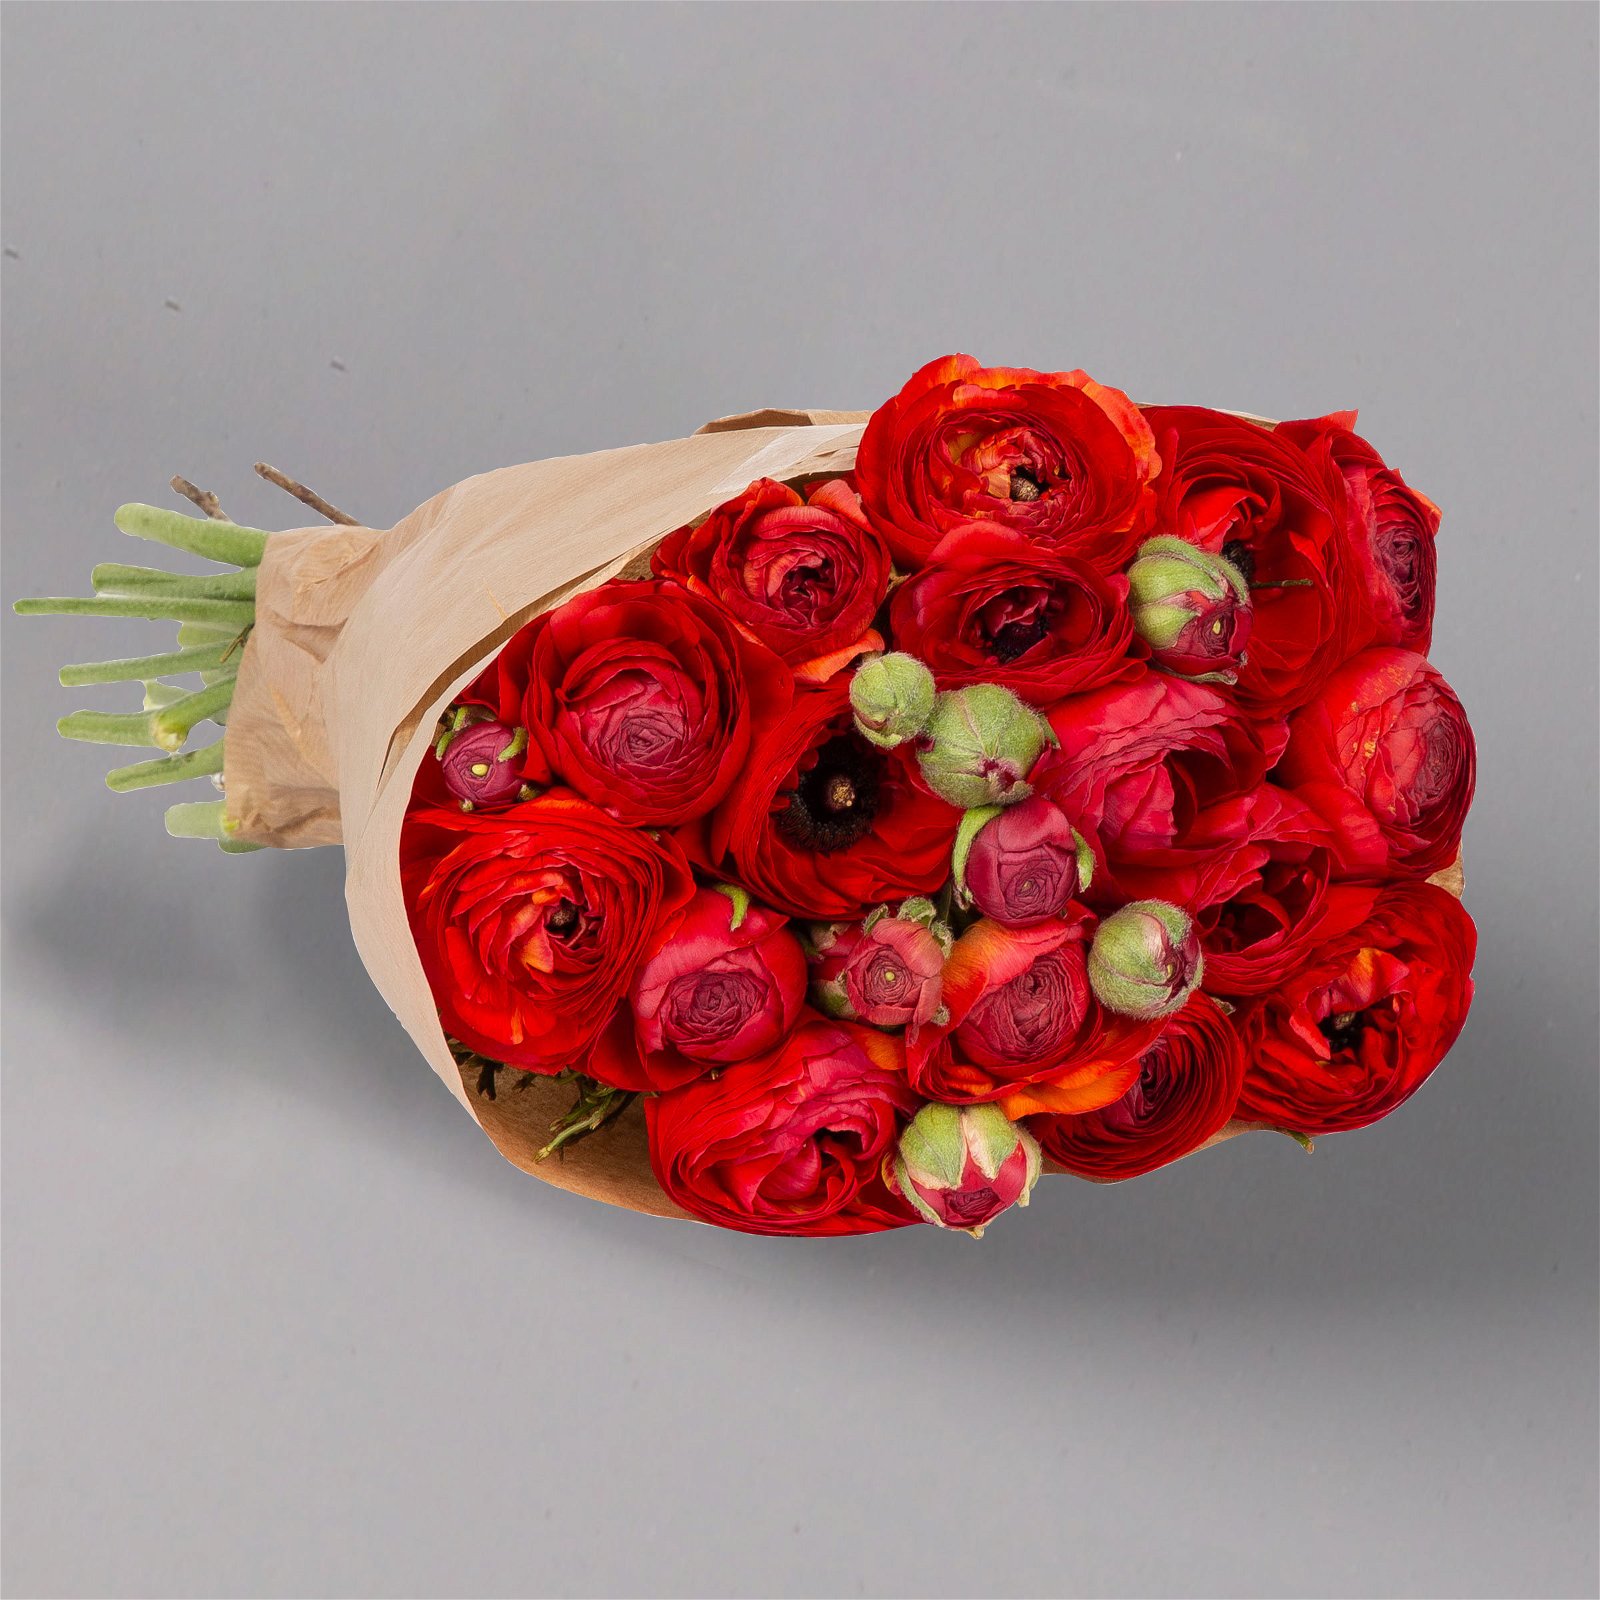 Blumenbund mit Ranunkeln, 15er-Bund, rot, inkl. gratis Grußkarte